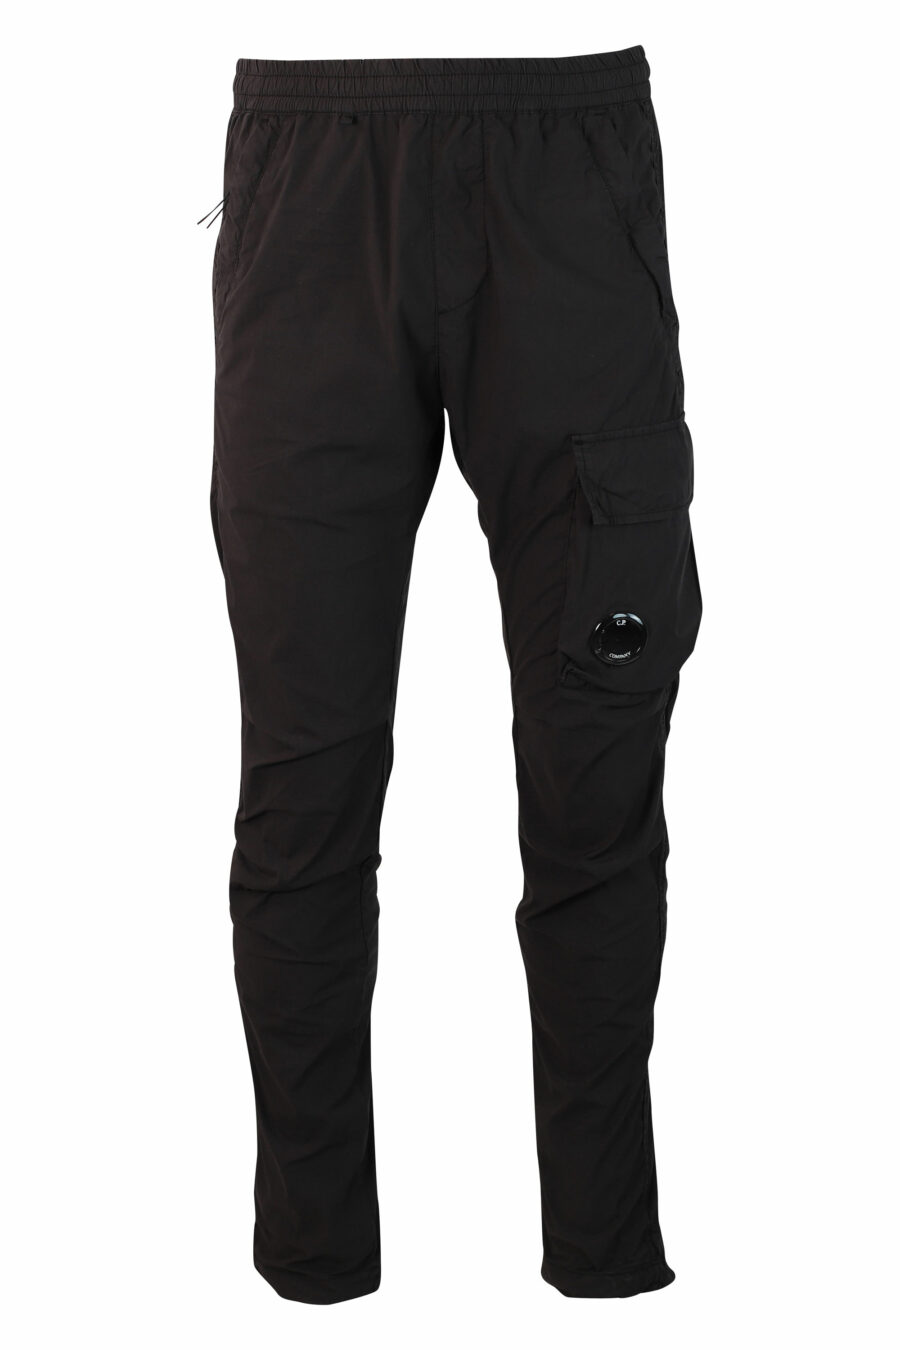 Pantalón negro con minilogo circular lateral - IMG 9912